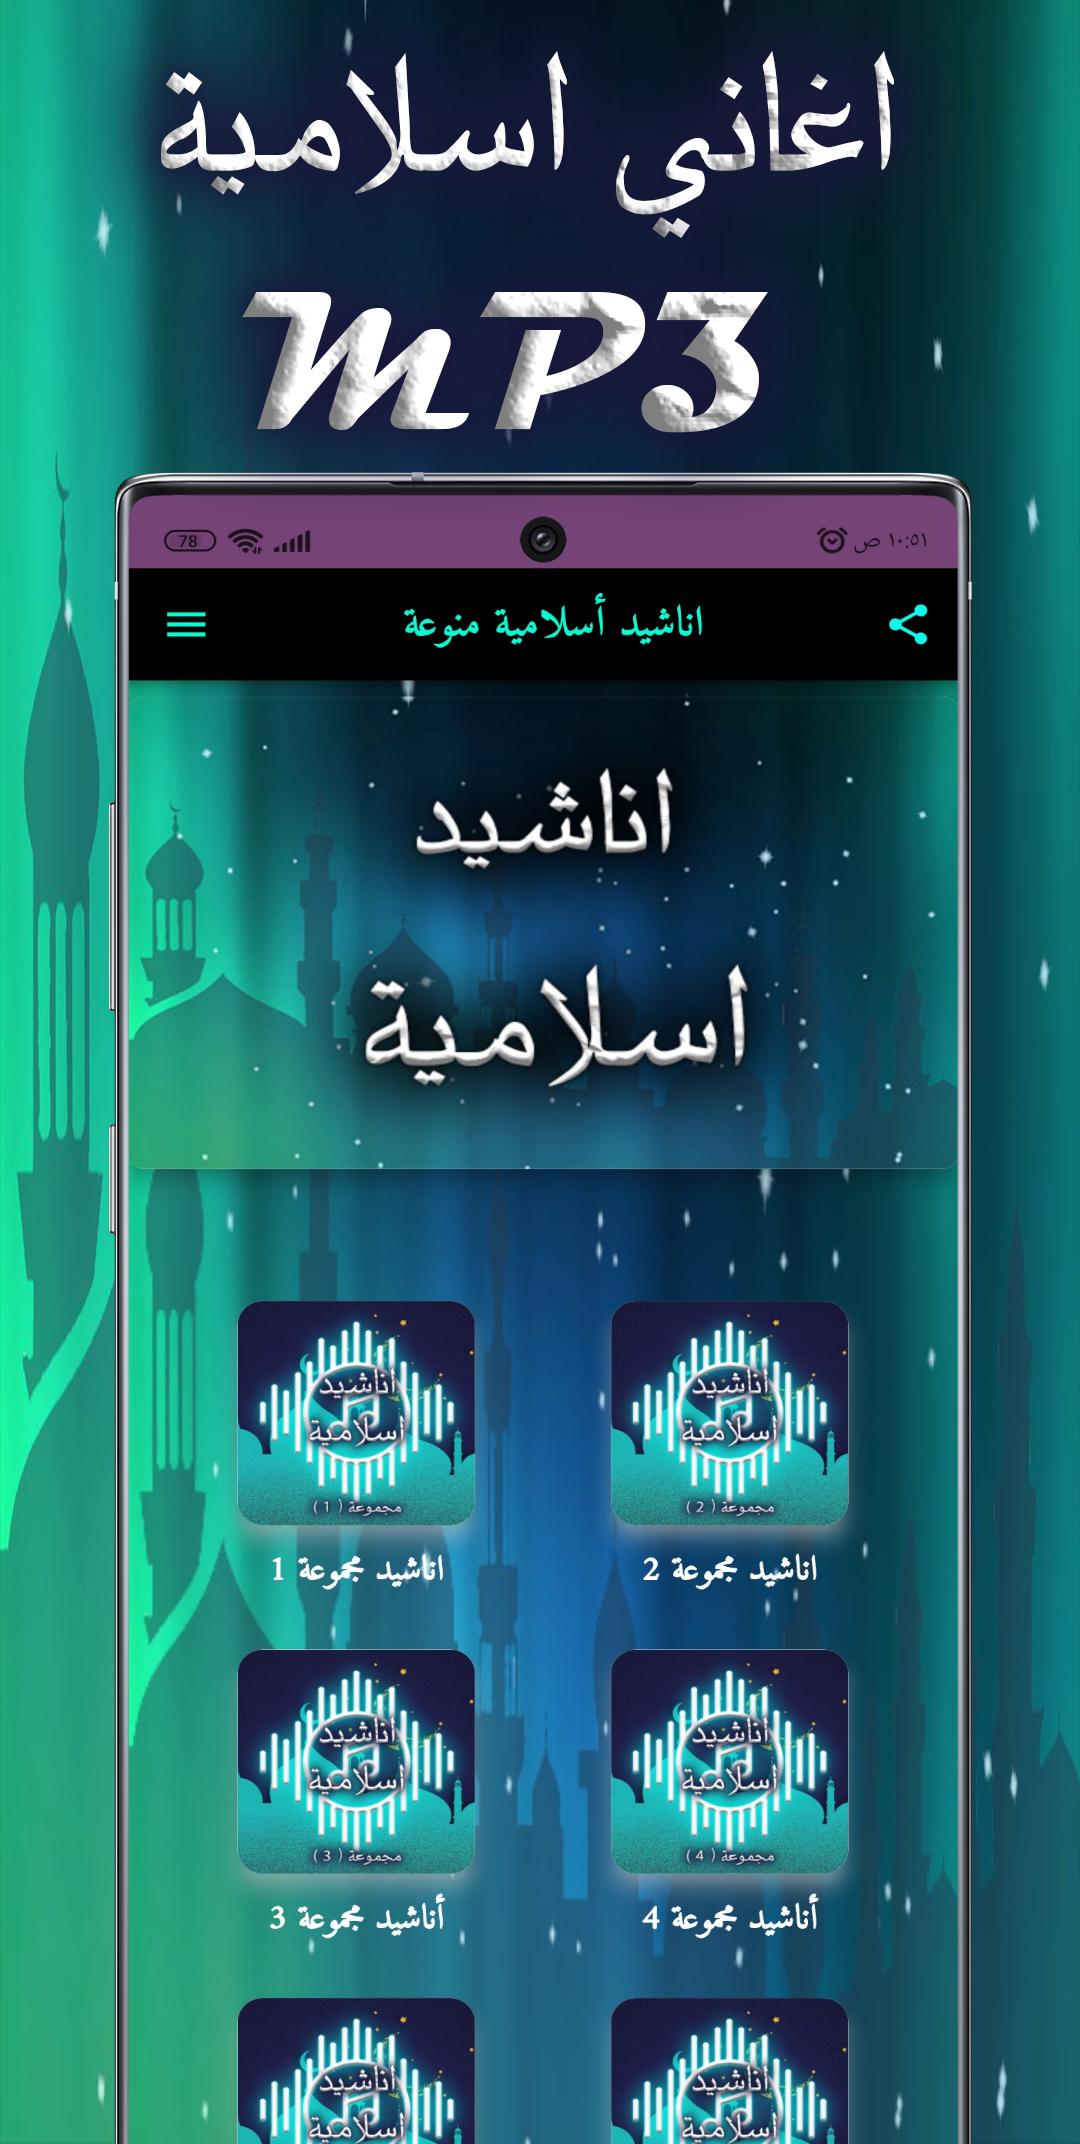 اغاني اسلامية mp3 APK for Android Download